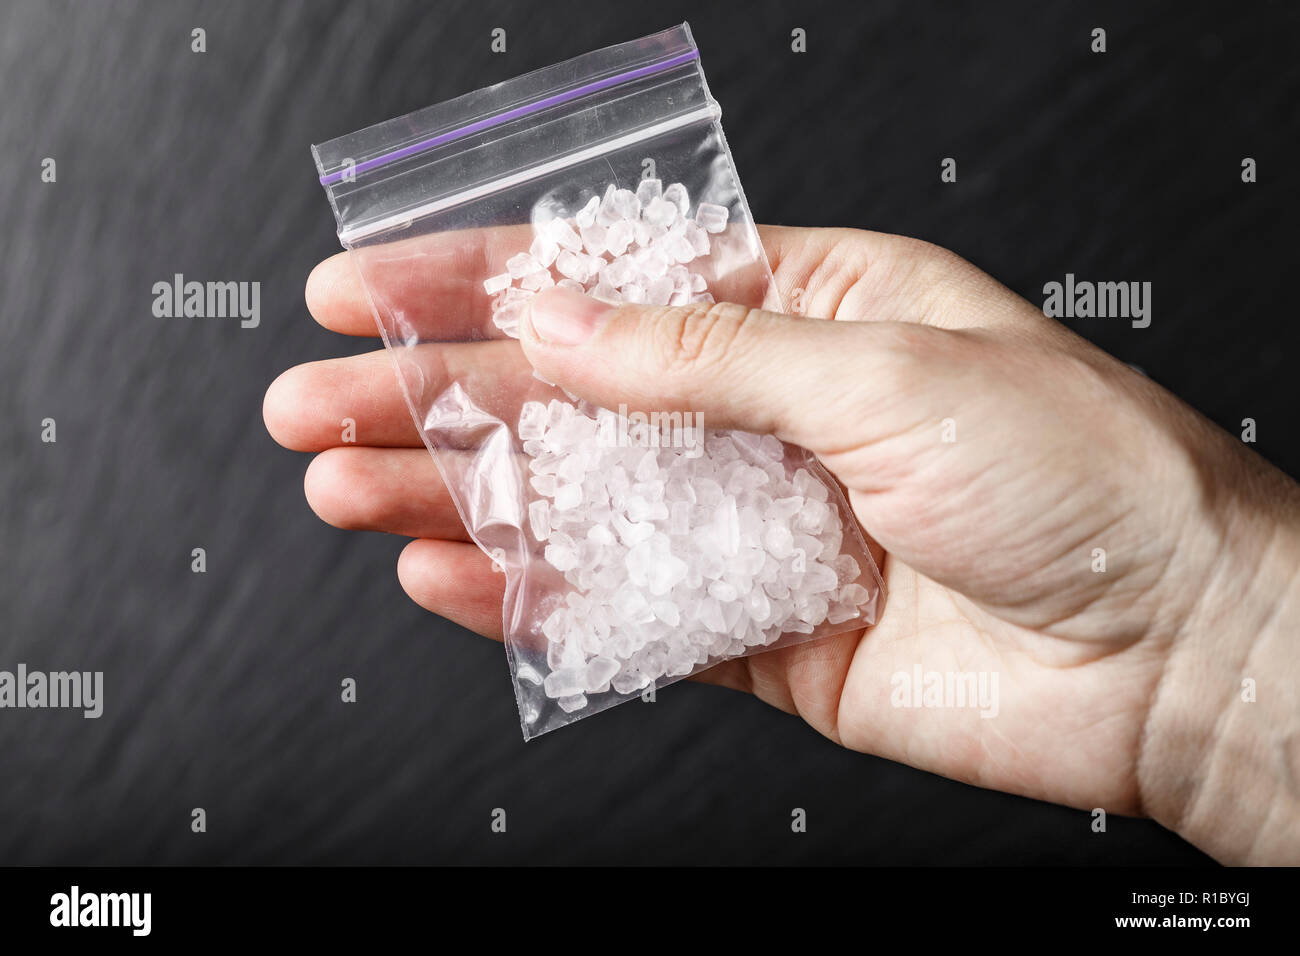 Un sacco di farmaci in forma di cristalli bianchi in mano Foto Stock